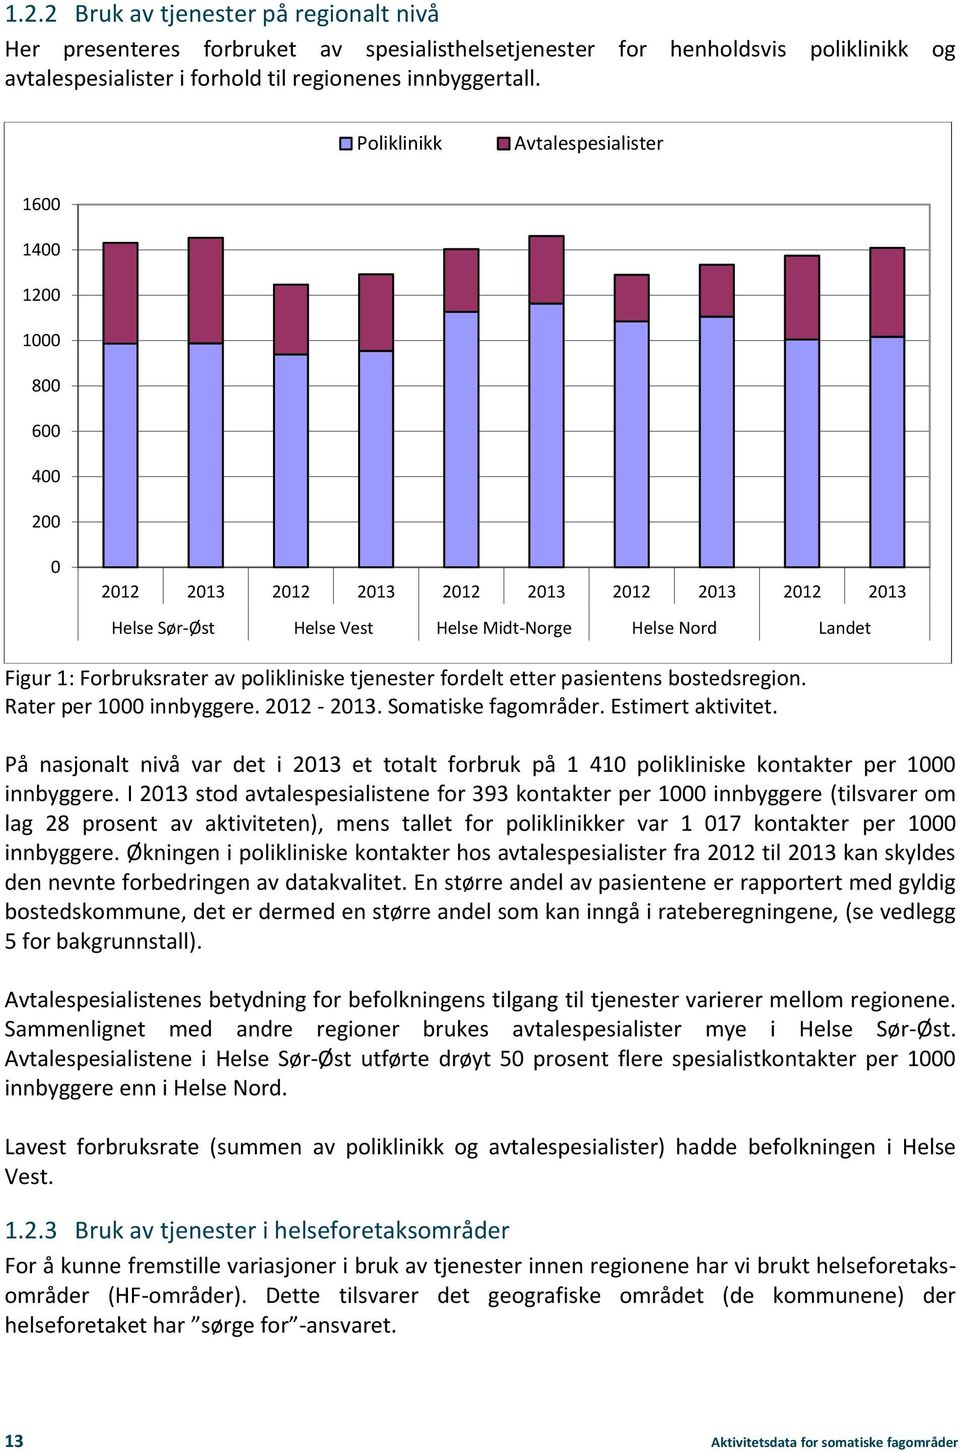 Forbruksrater av polikliniske tjenester fordelt etter pasientens bostedsregion. Rater per 1000 innbyggere. 2012-2013. Somatiske fagområder. Estimert aktivitet.